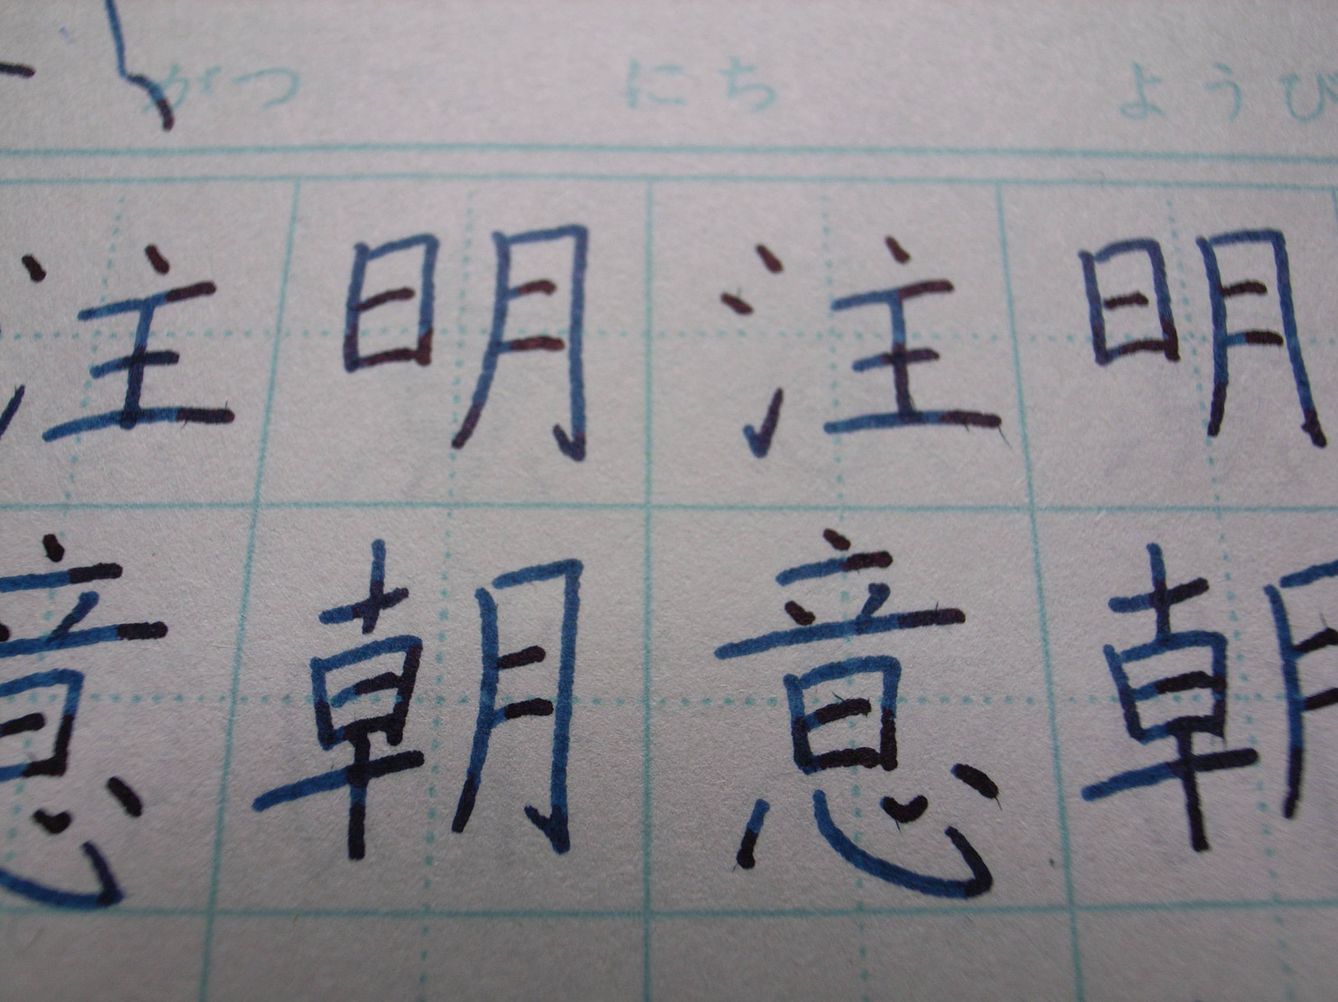 El que parecía el principal problema, componer textos rápidos en chino, se solventó con facilidad. (Toshiyuki IMAI | Flickr)